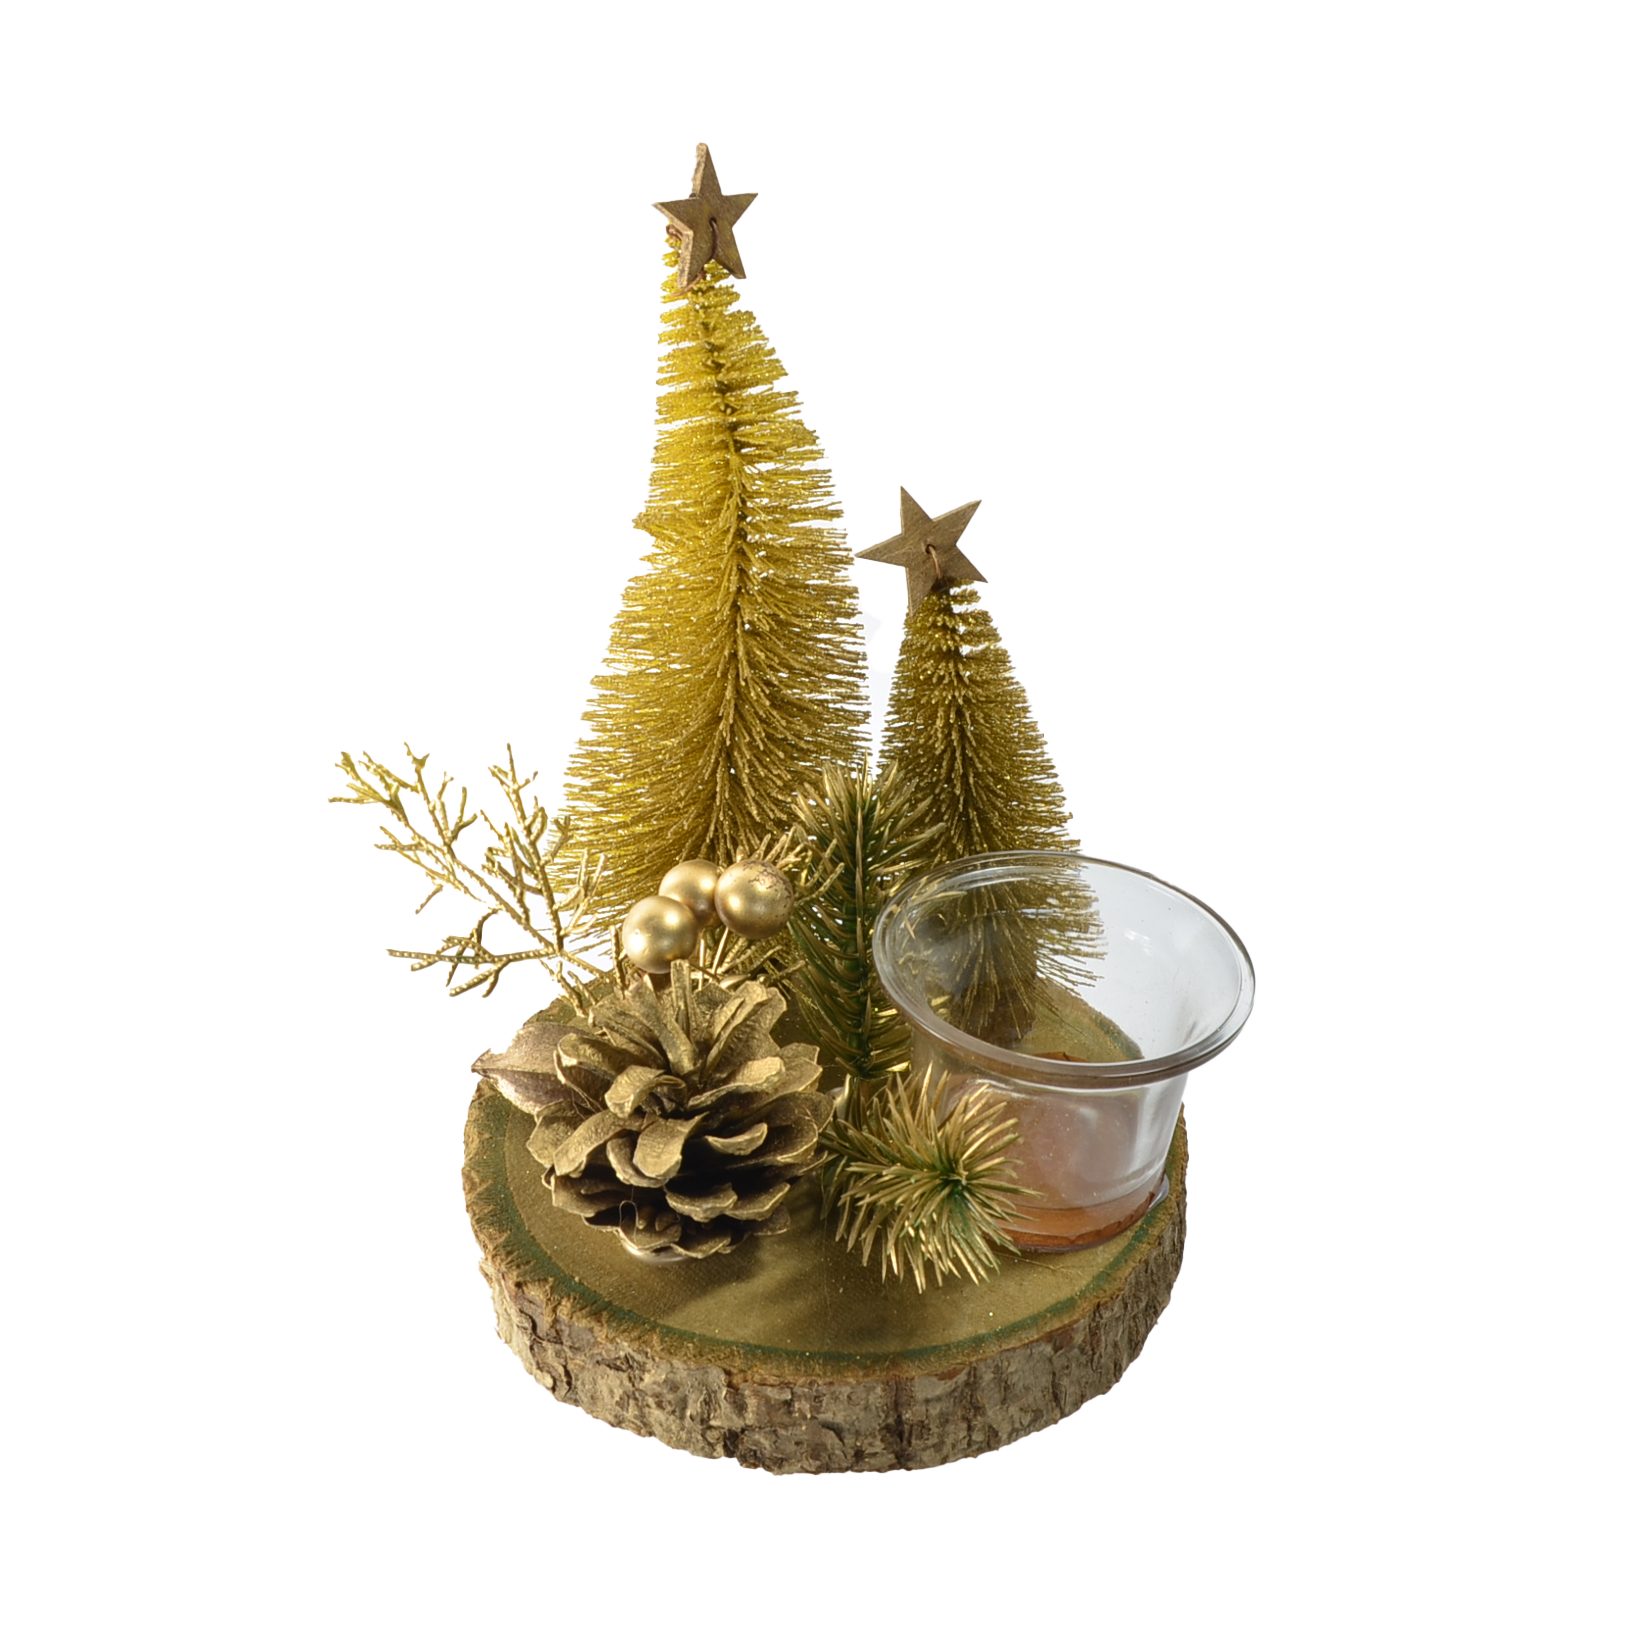 SB Zentralmarkt B&S Teelichthalter Weihnachts Teelichtglas auf Holzplatte in Goldtönen Ø 14 cm